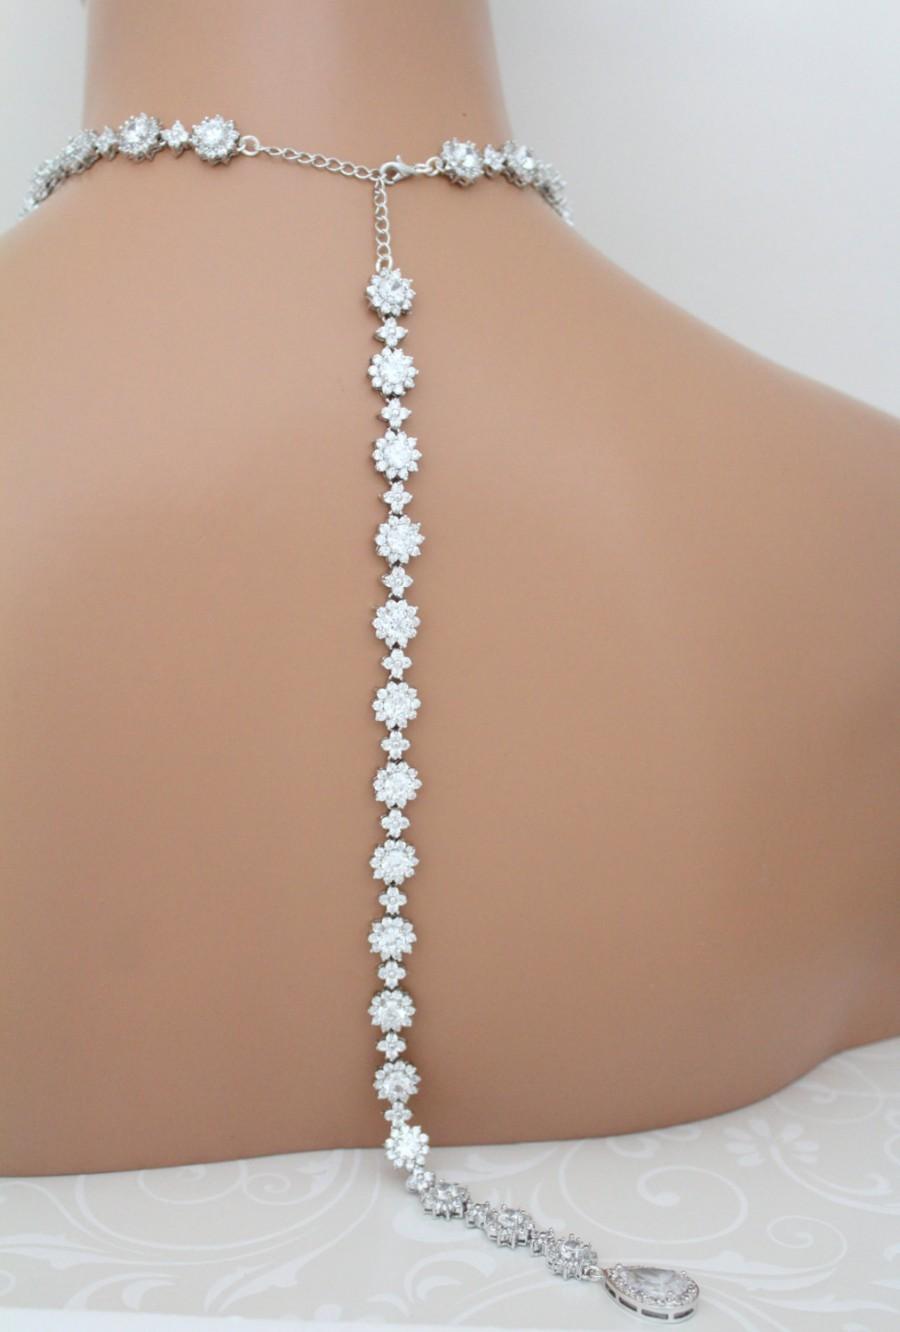 Mariage - Bridal Backdrop necklace, Crystal Wedding necklace, Long Backdrop necklace, Statement necklace, Rhinestone necklace, CZ necklace, Halo